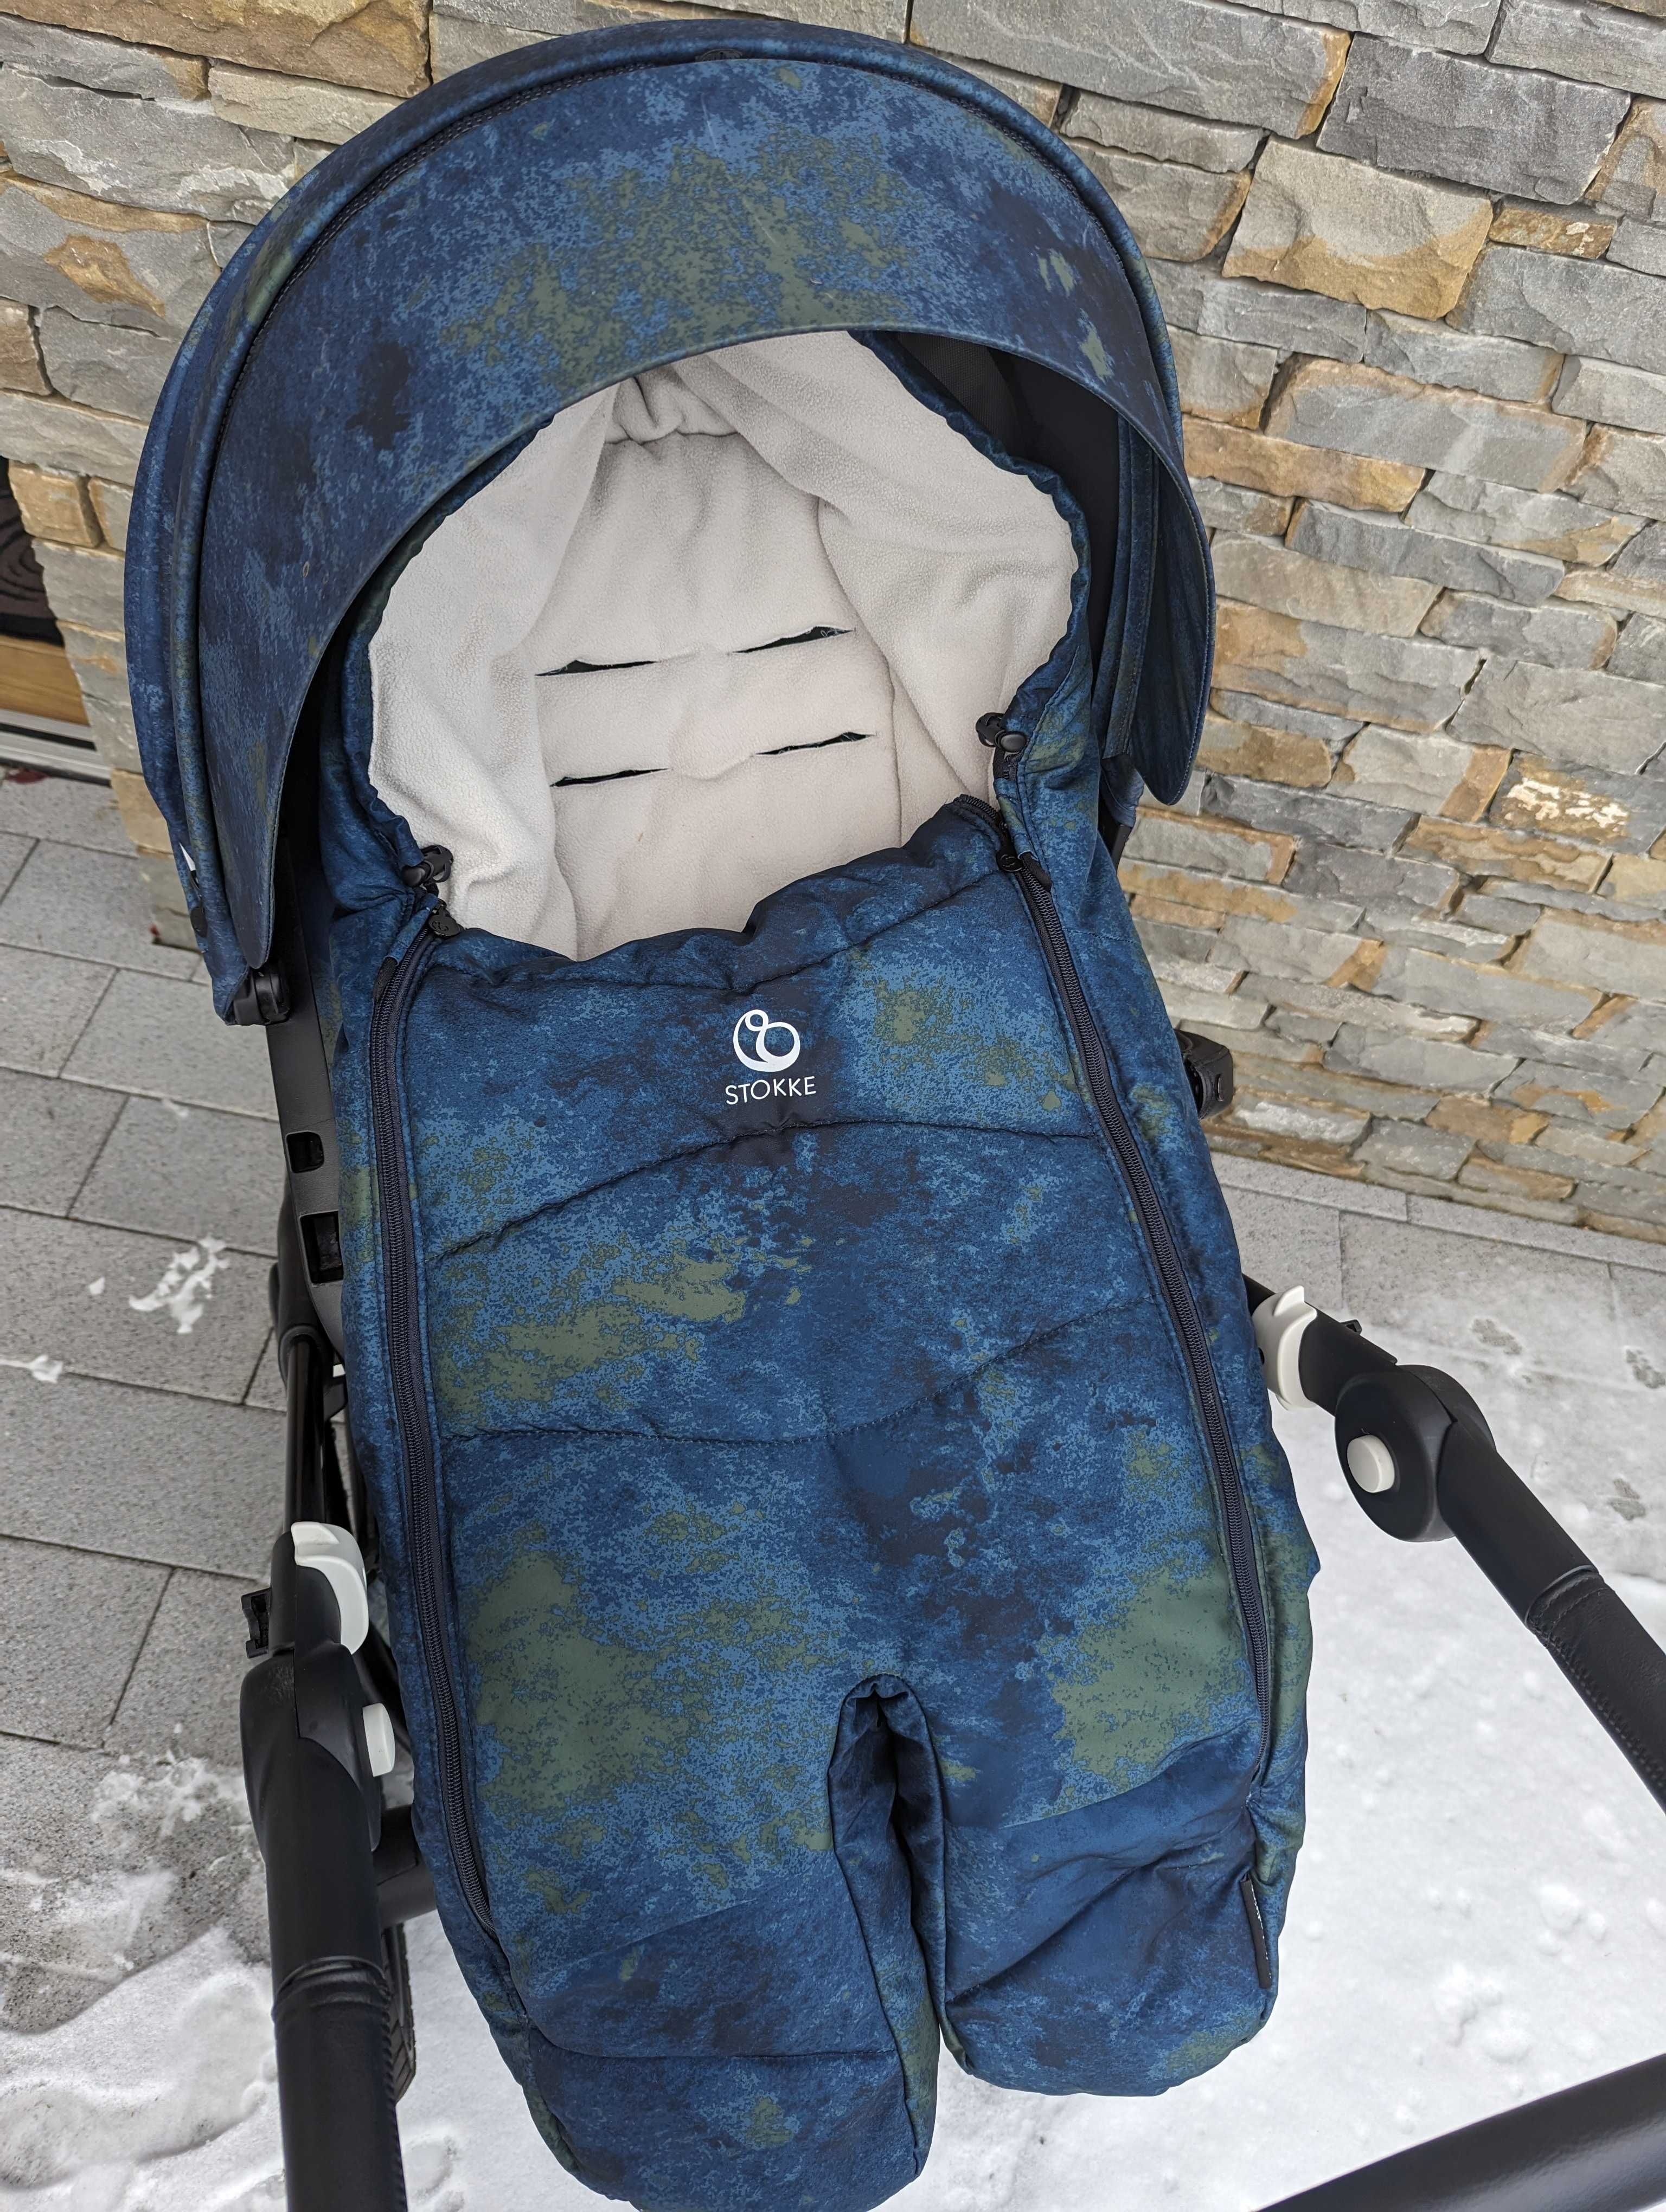 Wózek Stokke Trailz Limited Edition Freedom 2w1 + śpiwór zimowy